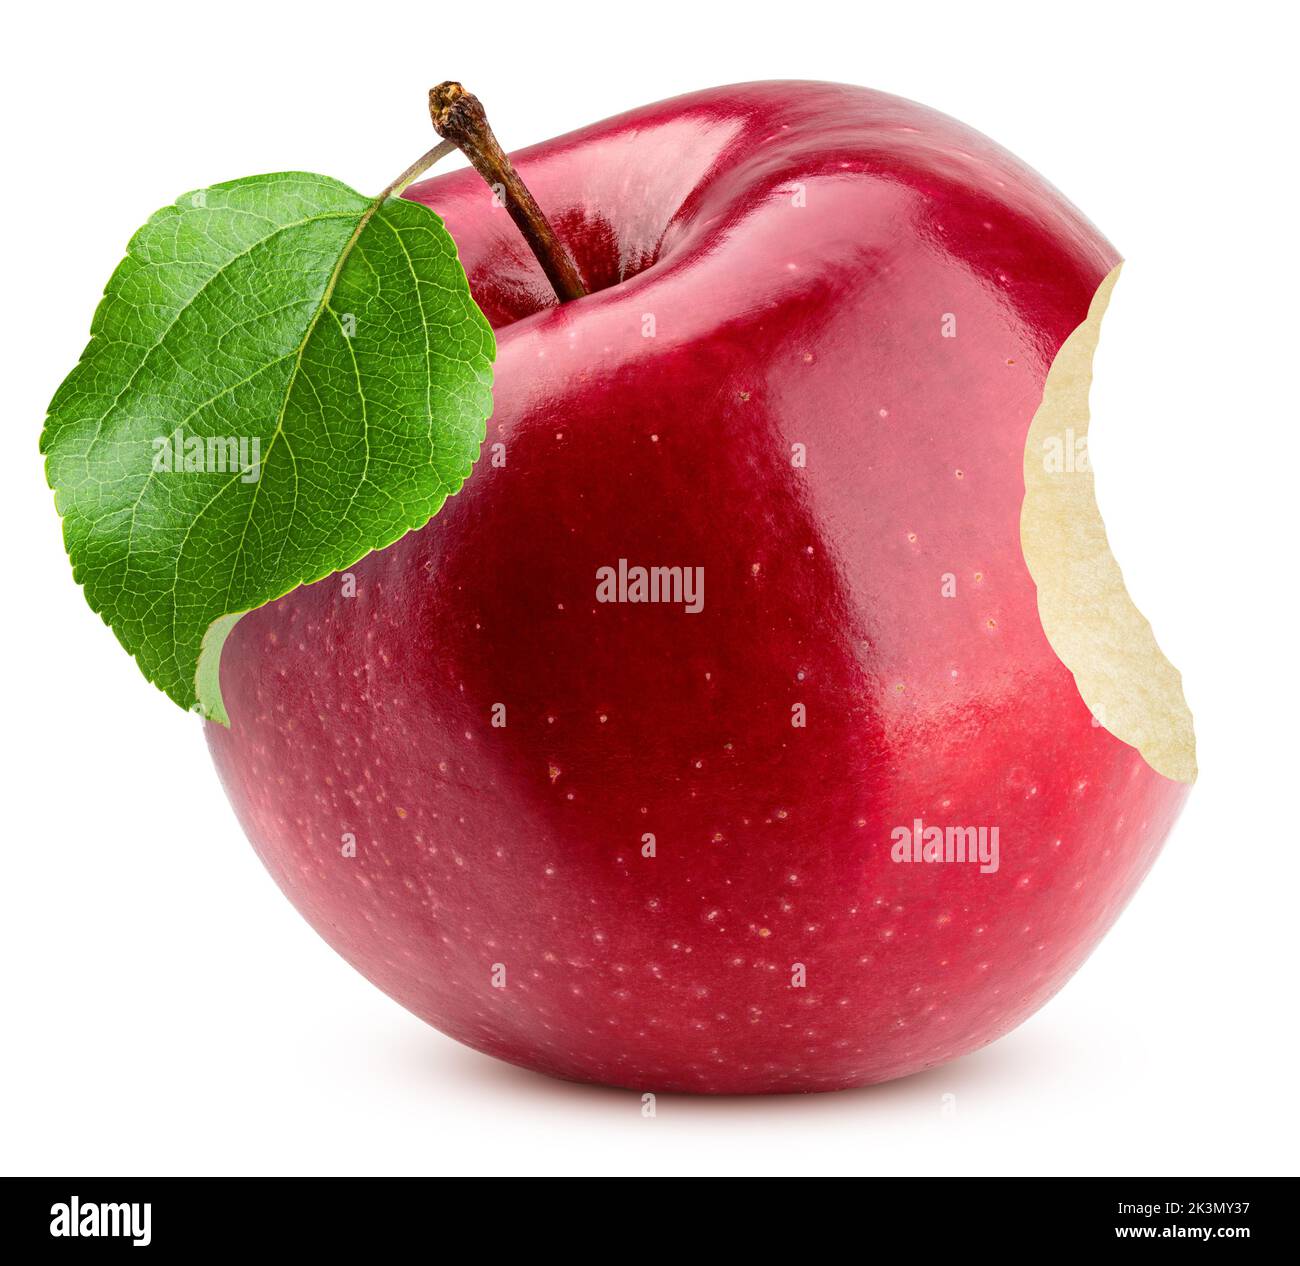 Morso di mela rosso isolato su sfondo bianco, percorso di ritaglio, profondità di campo completa Foto Stock